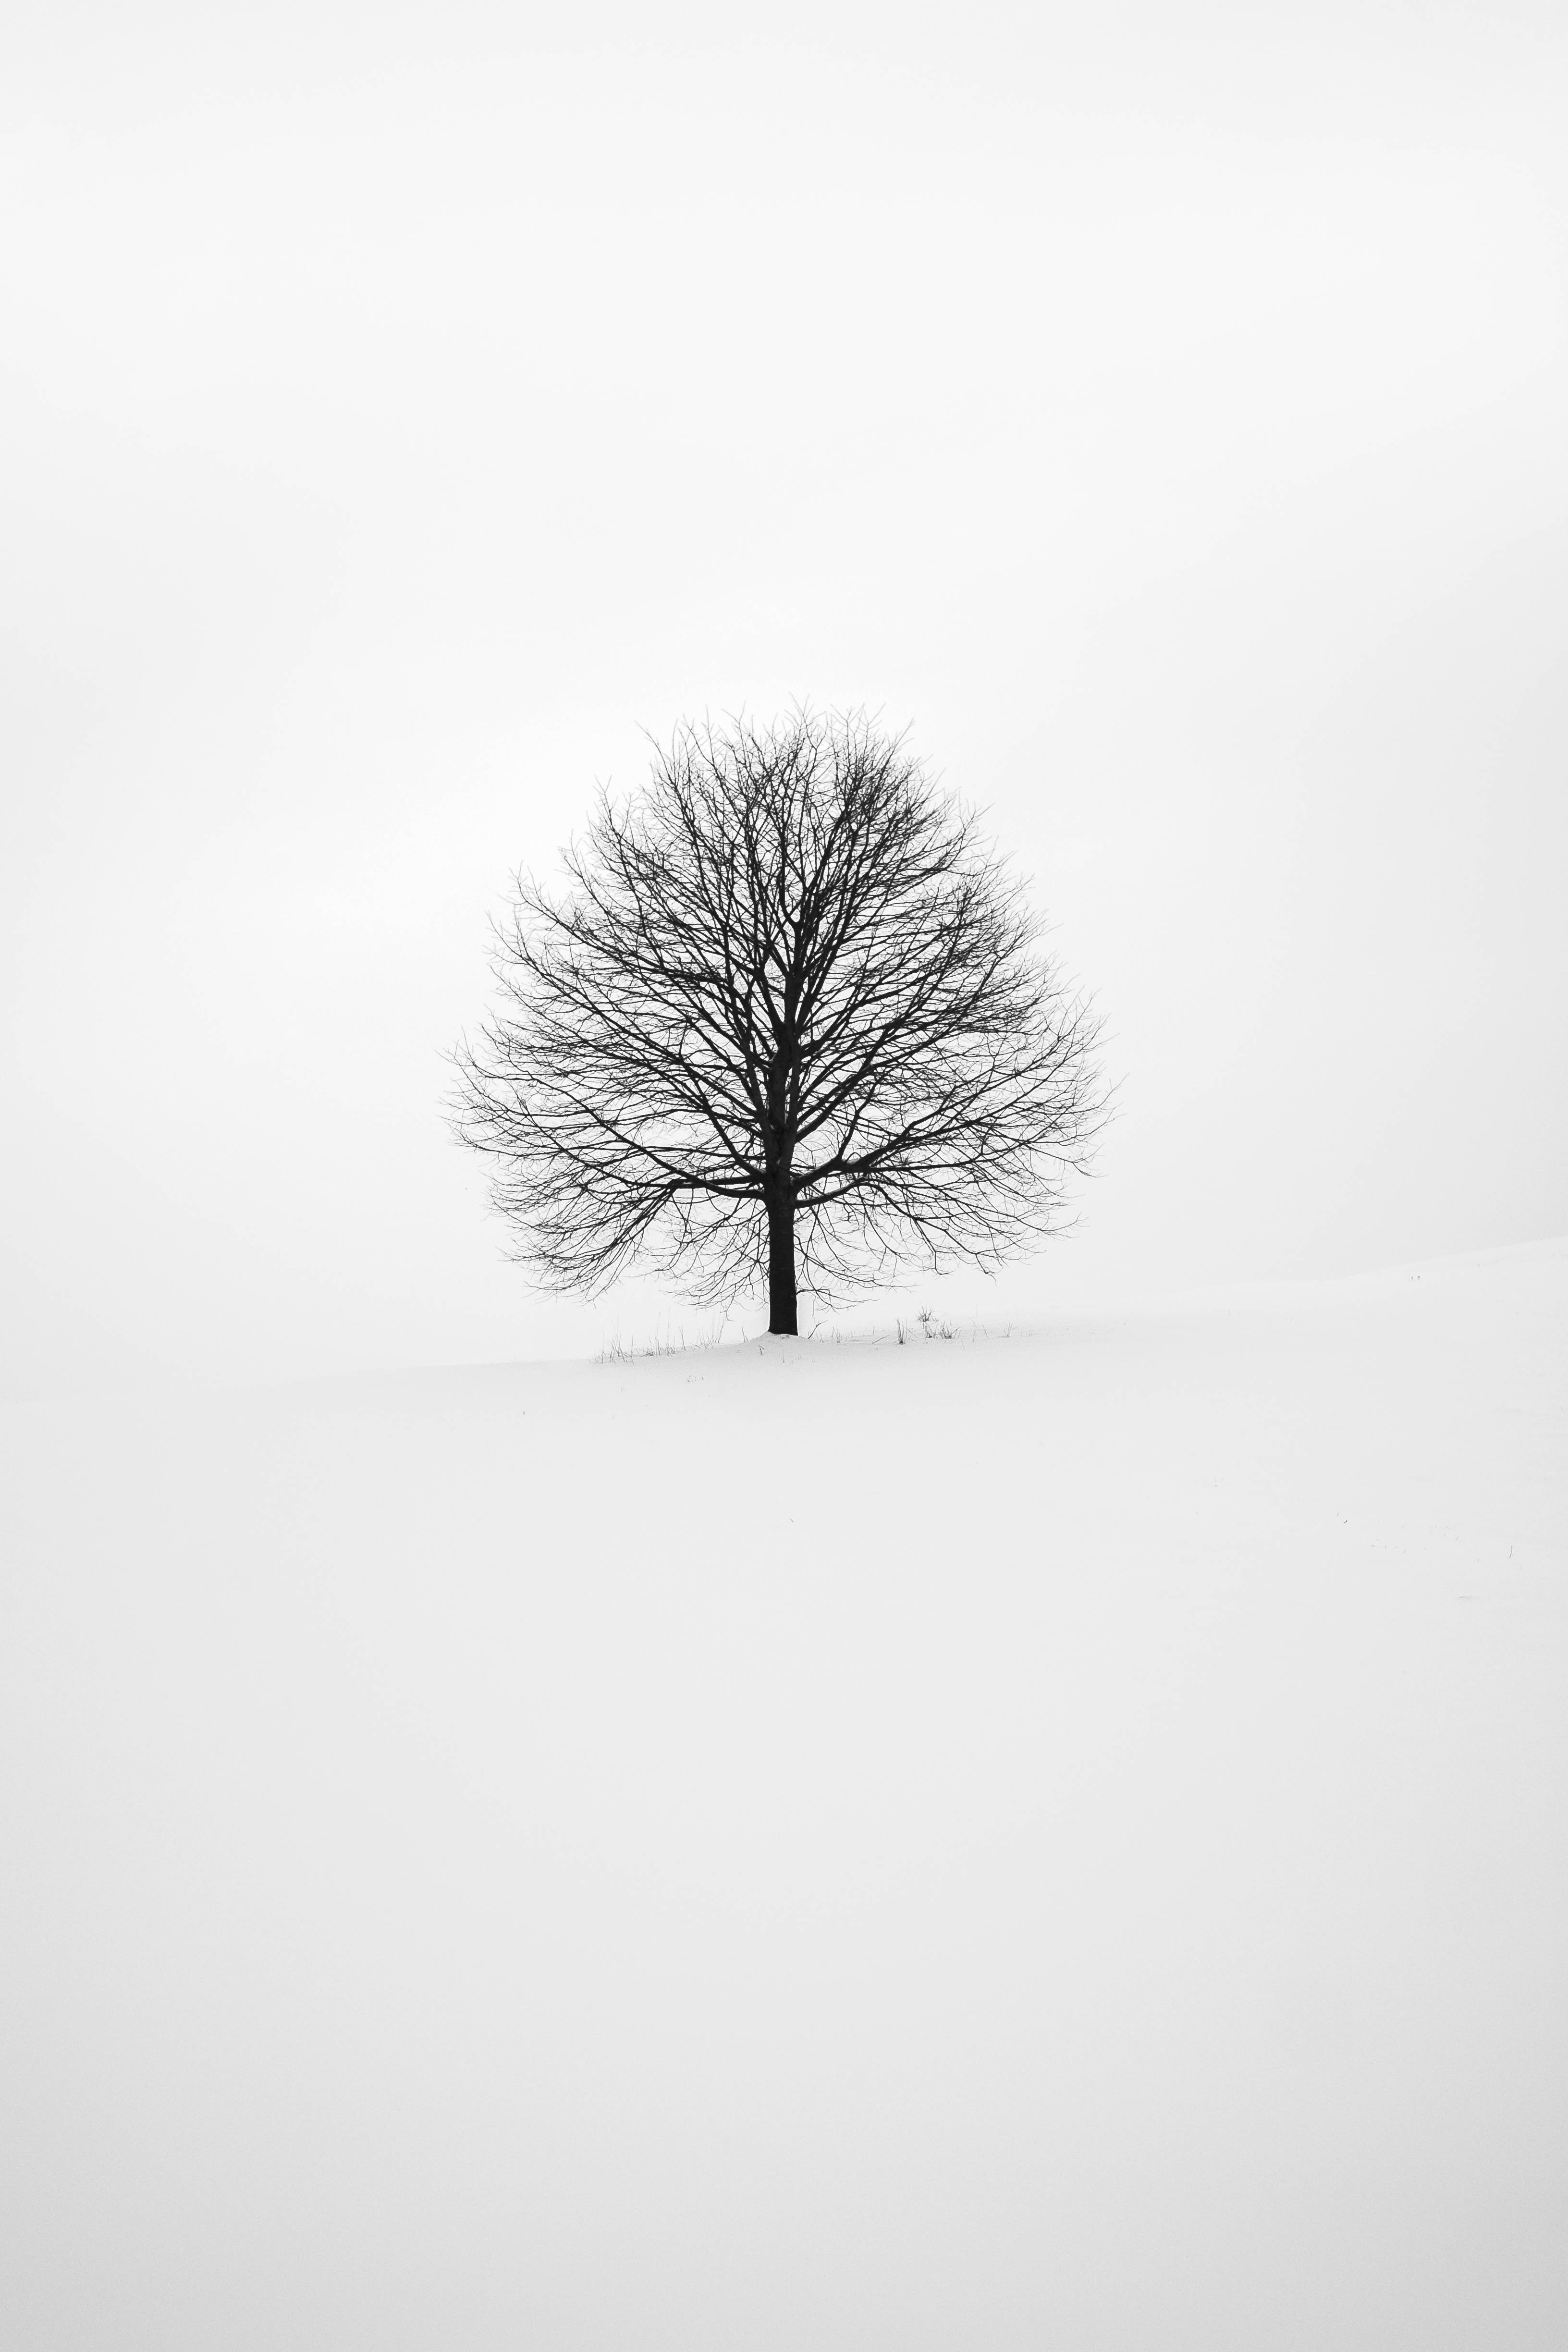 Download Minimal Winter Tree Cool iPad Wallpaper